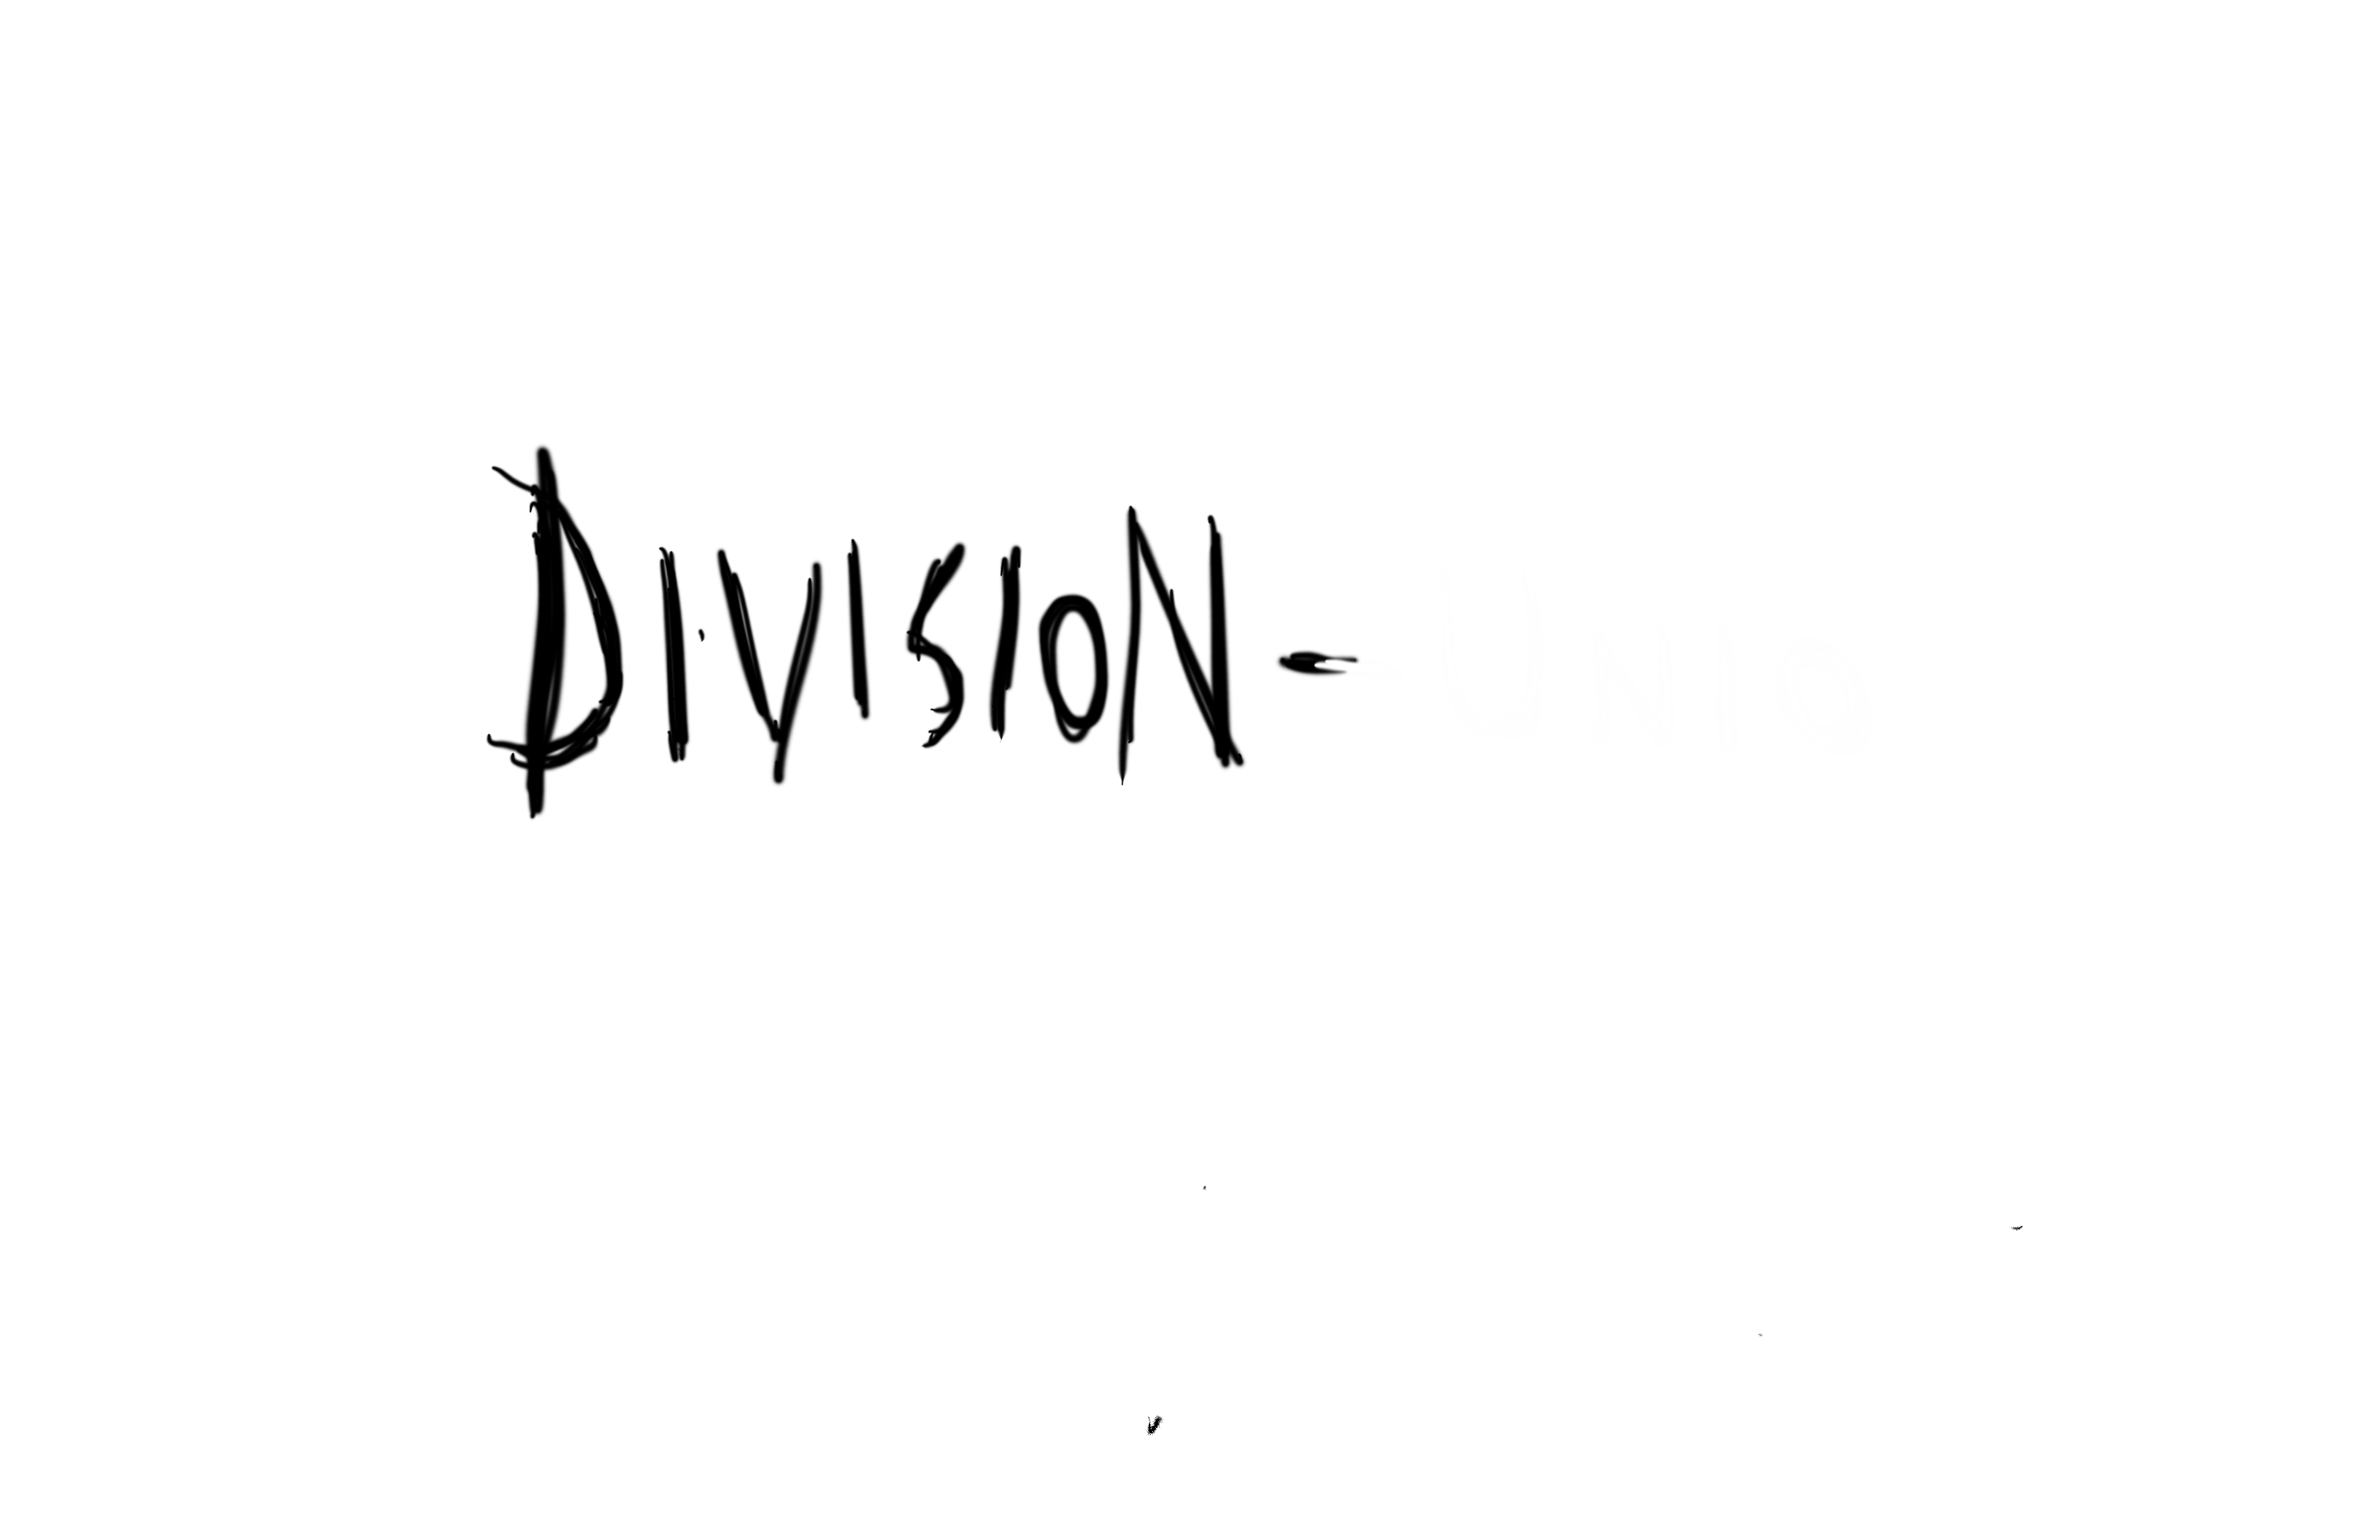 Division-Unio